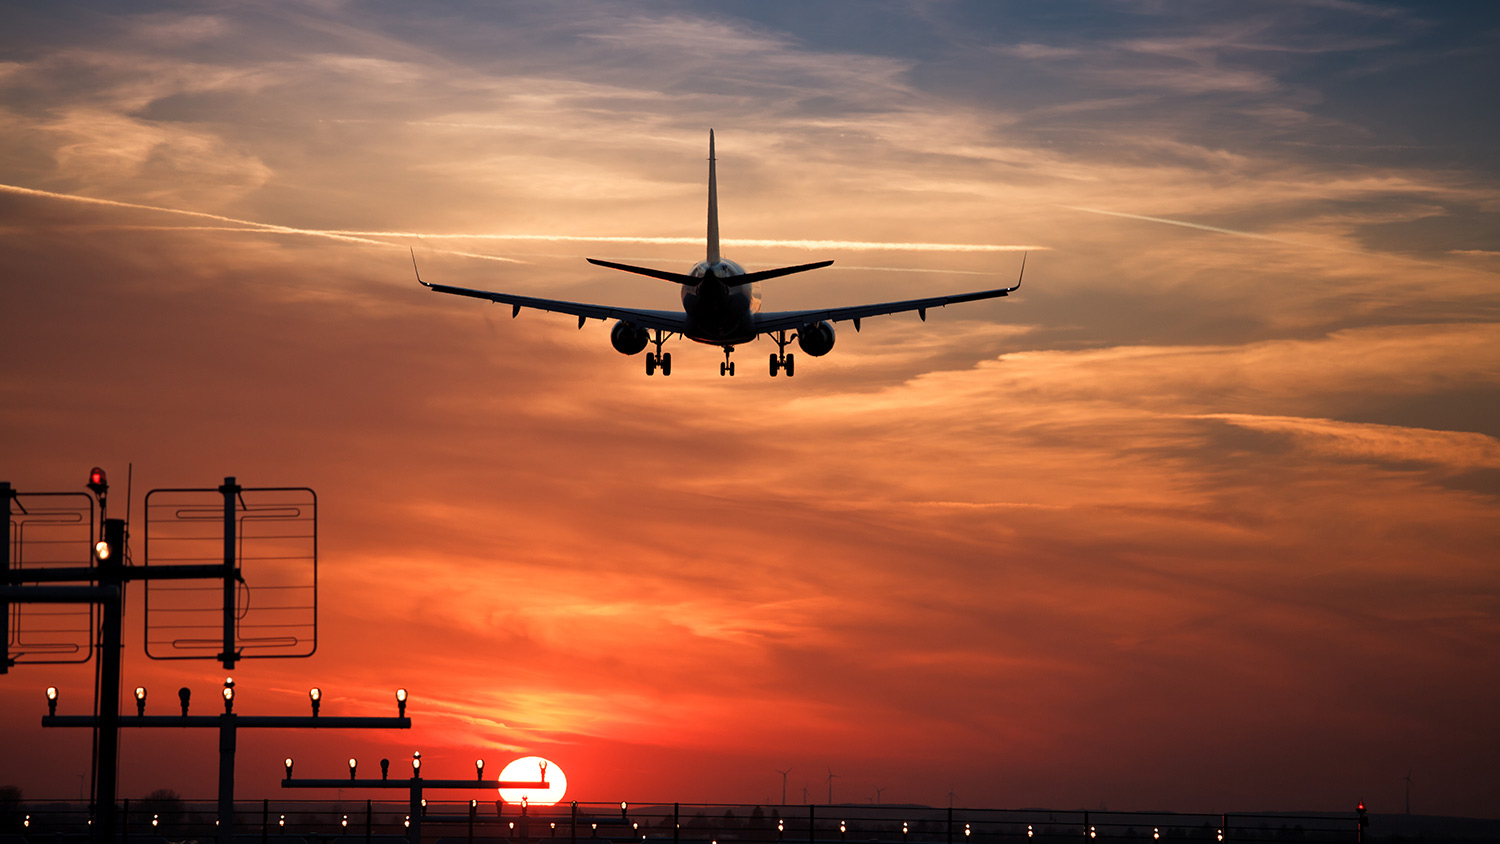 Sunset airplane landing